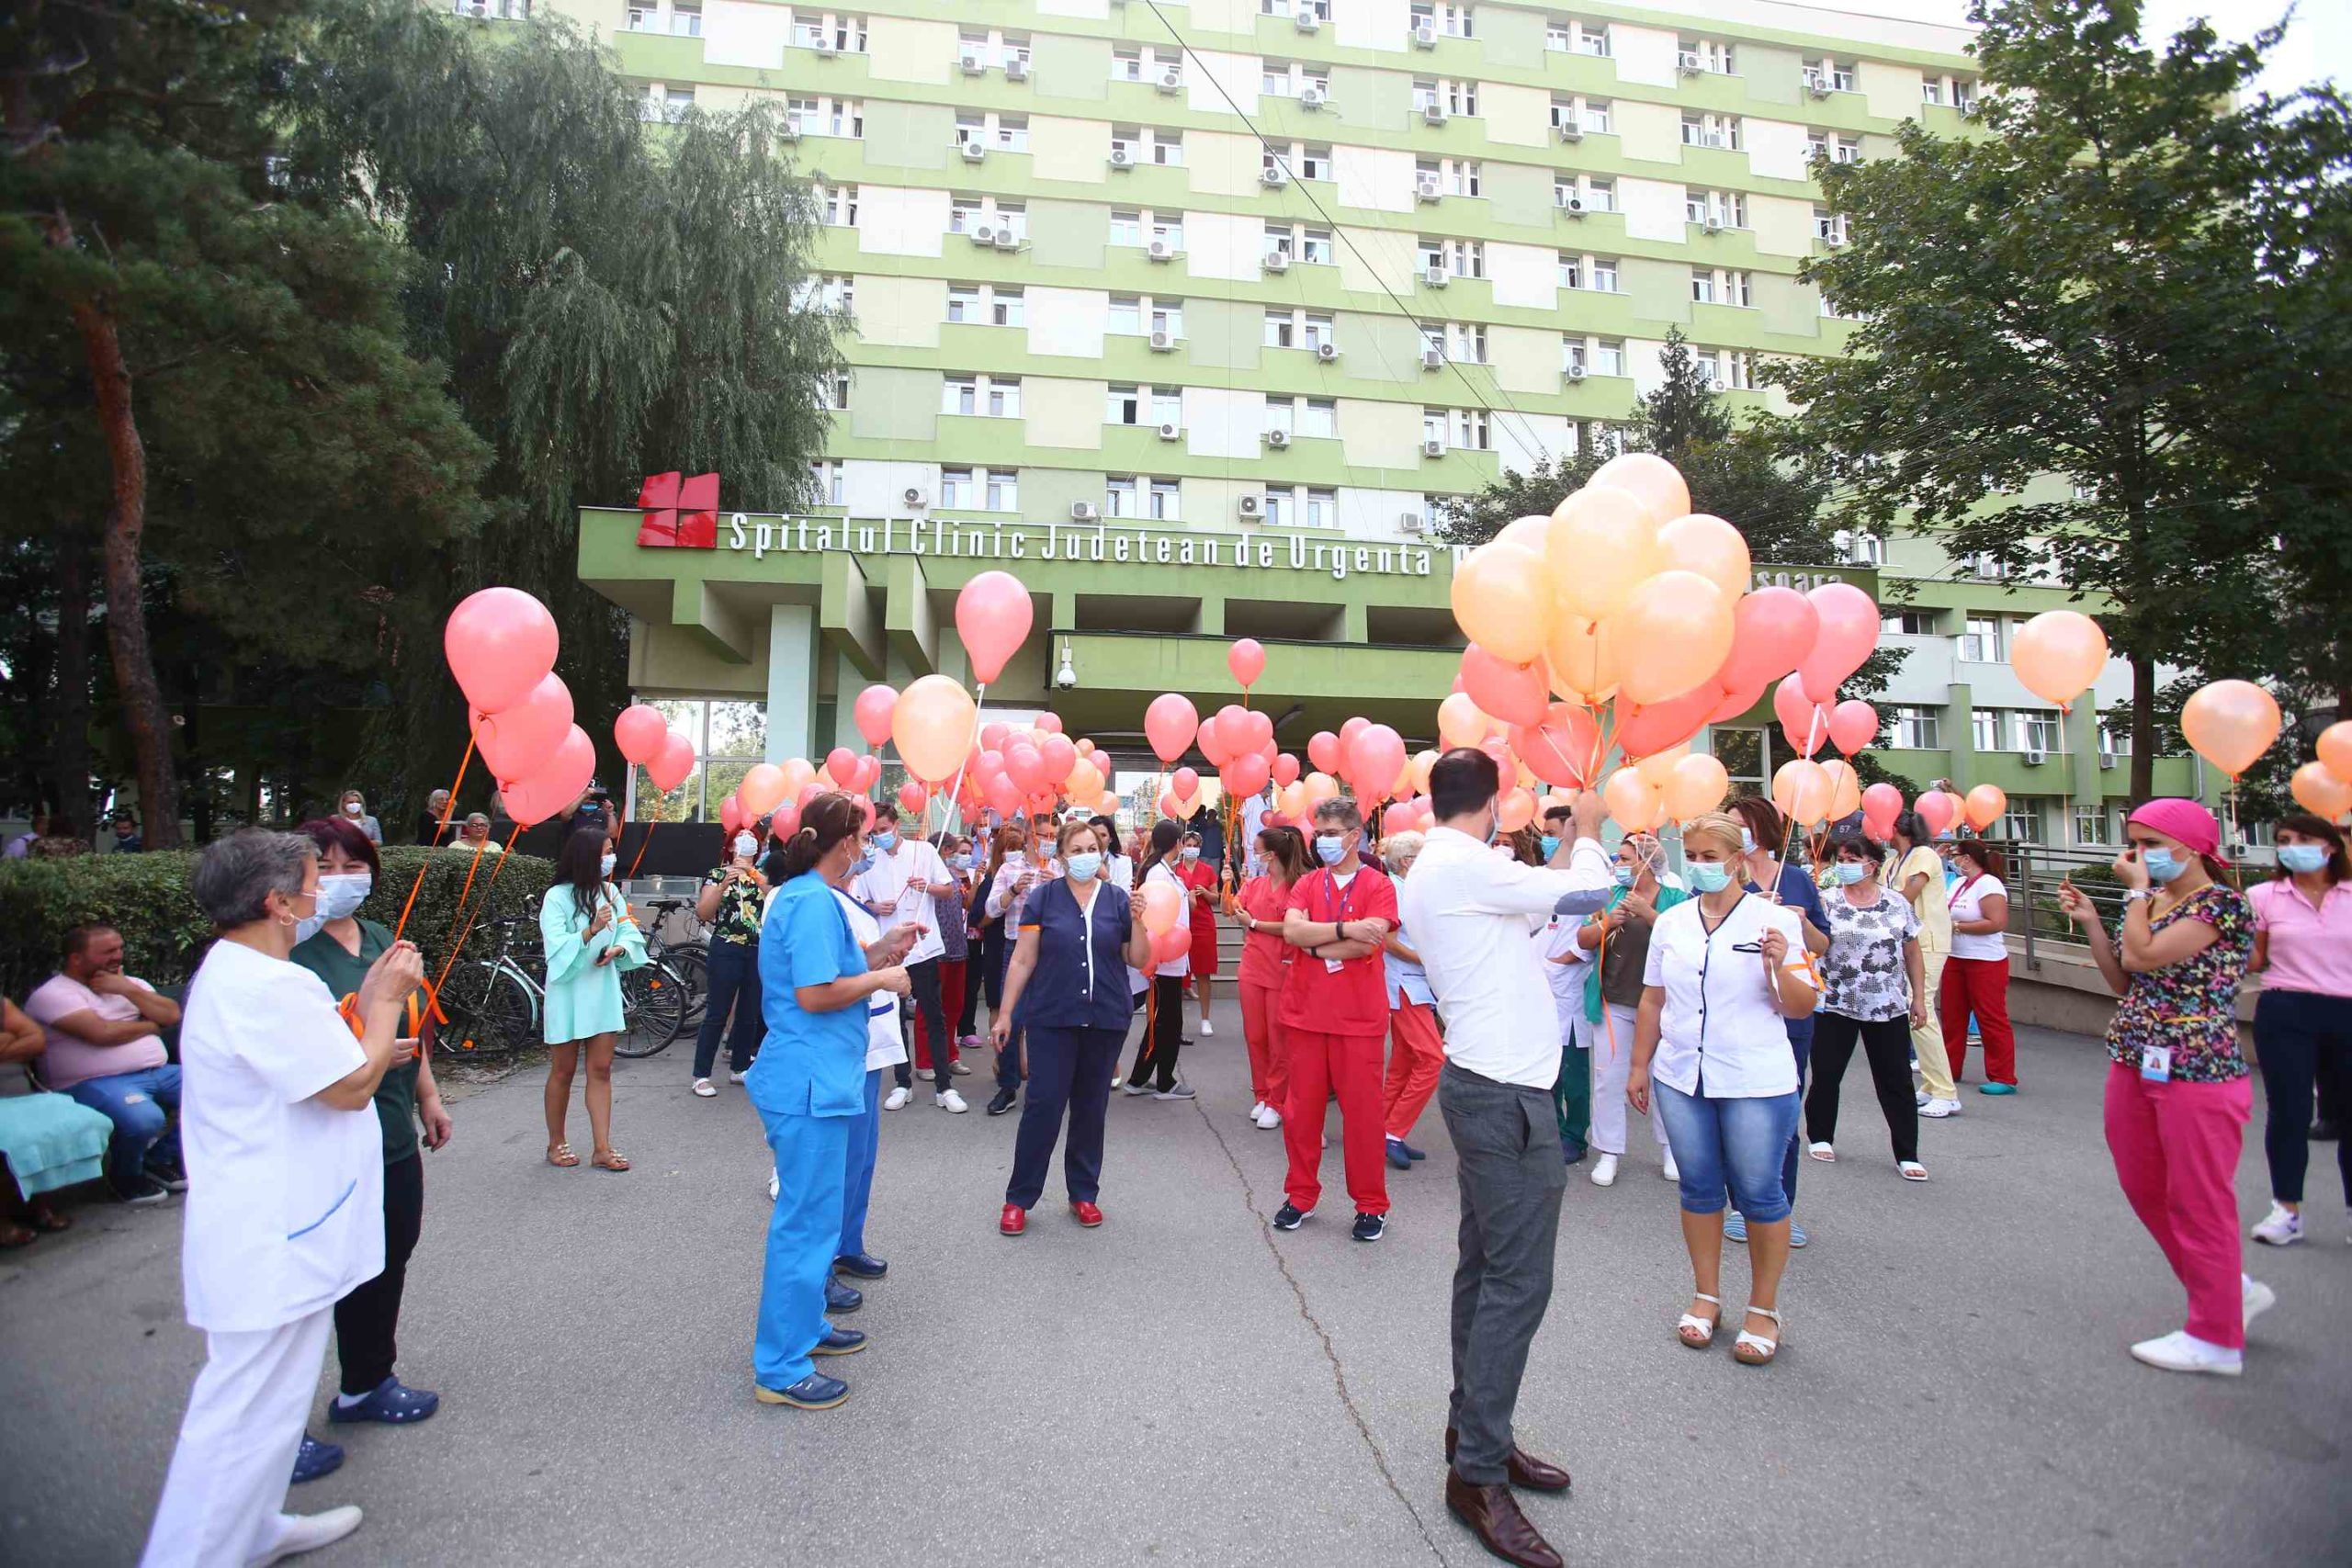 Baloane portocalii lansate în fața Spitalului Județean Timișoara pentru pacienți și aplauze pentru cadrele medicale aflate în lupta cu Covid-19